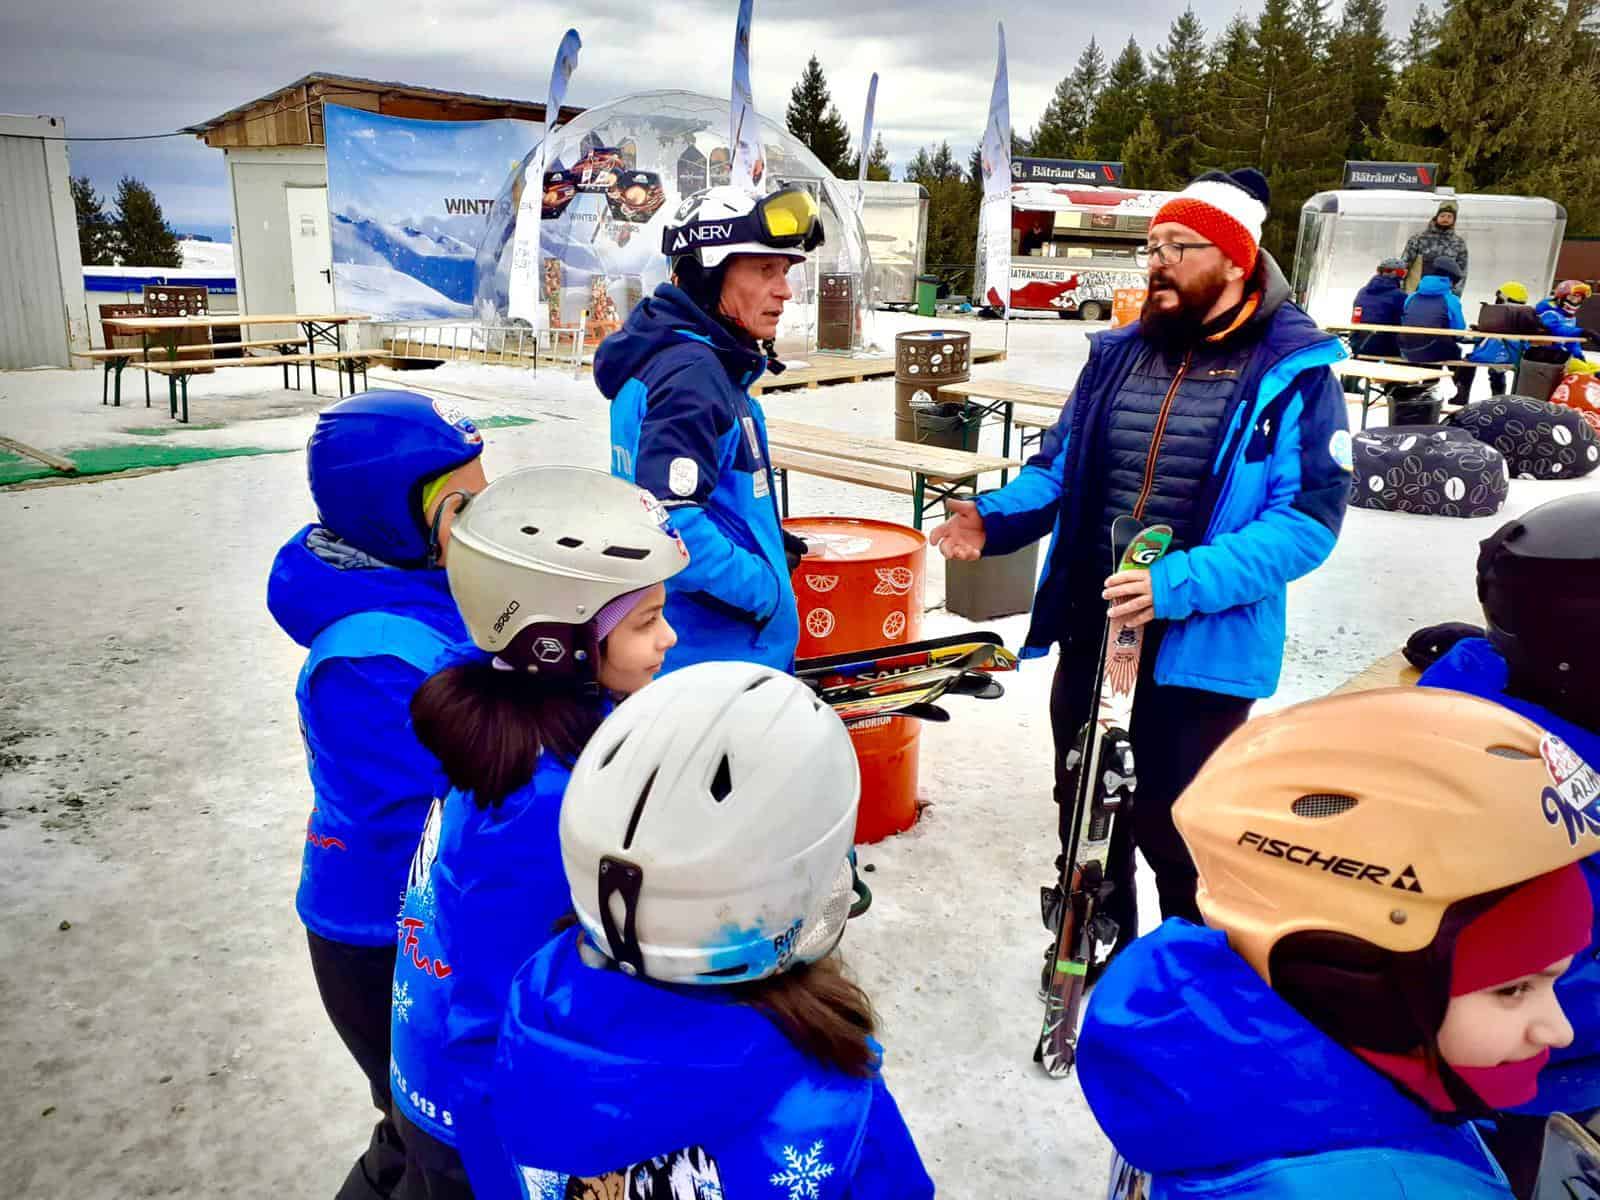 foto copii nevoiaşi învaţă să schieze cu ajutorul crucii roşii sibiu